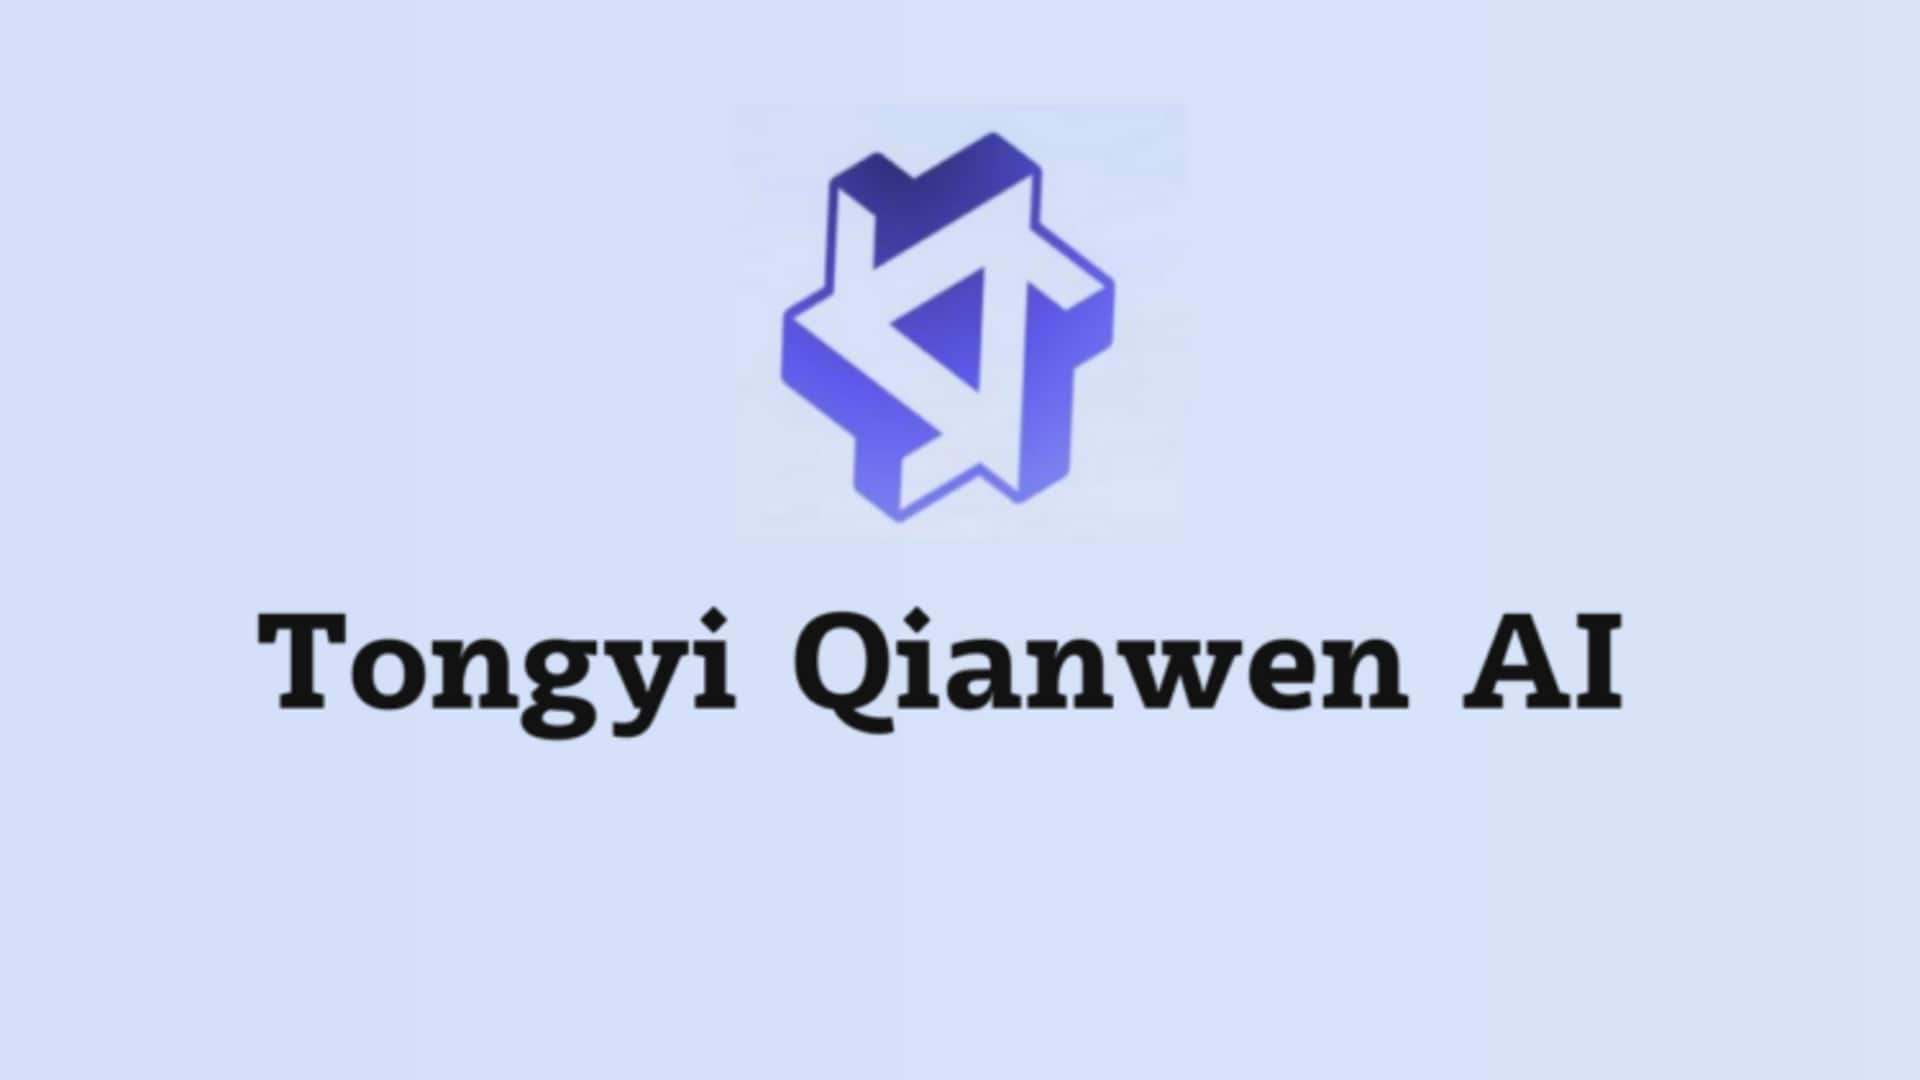 Alibaba to soon release Tongyi Qianwen AI model for public